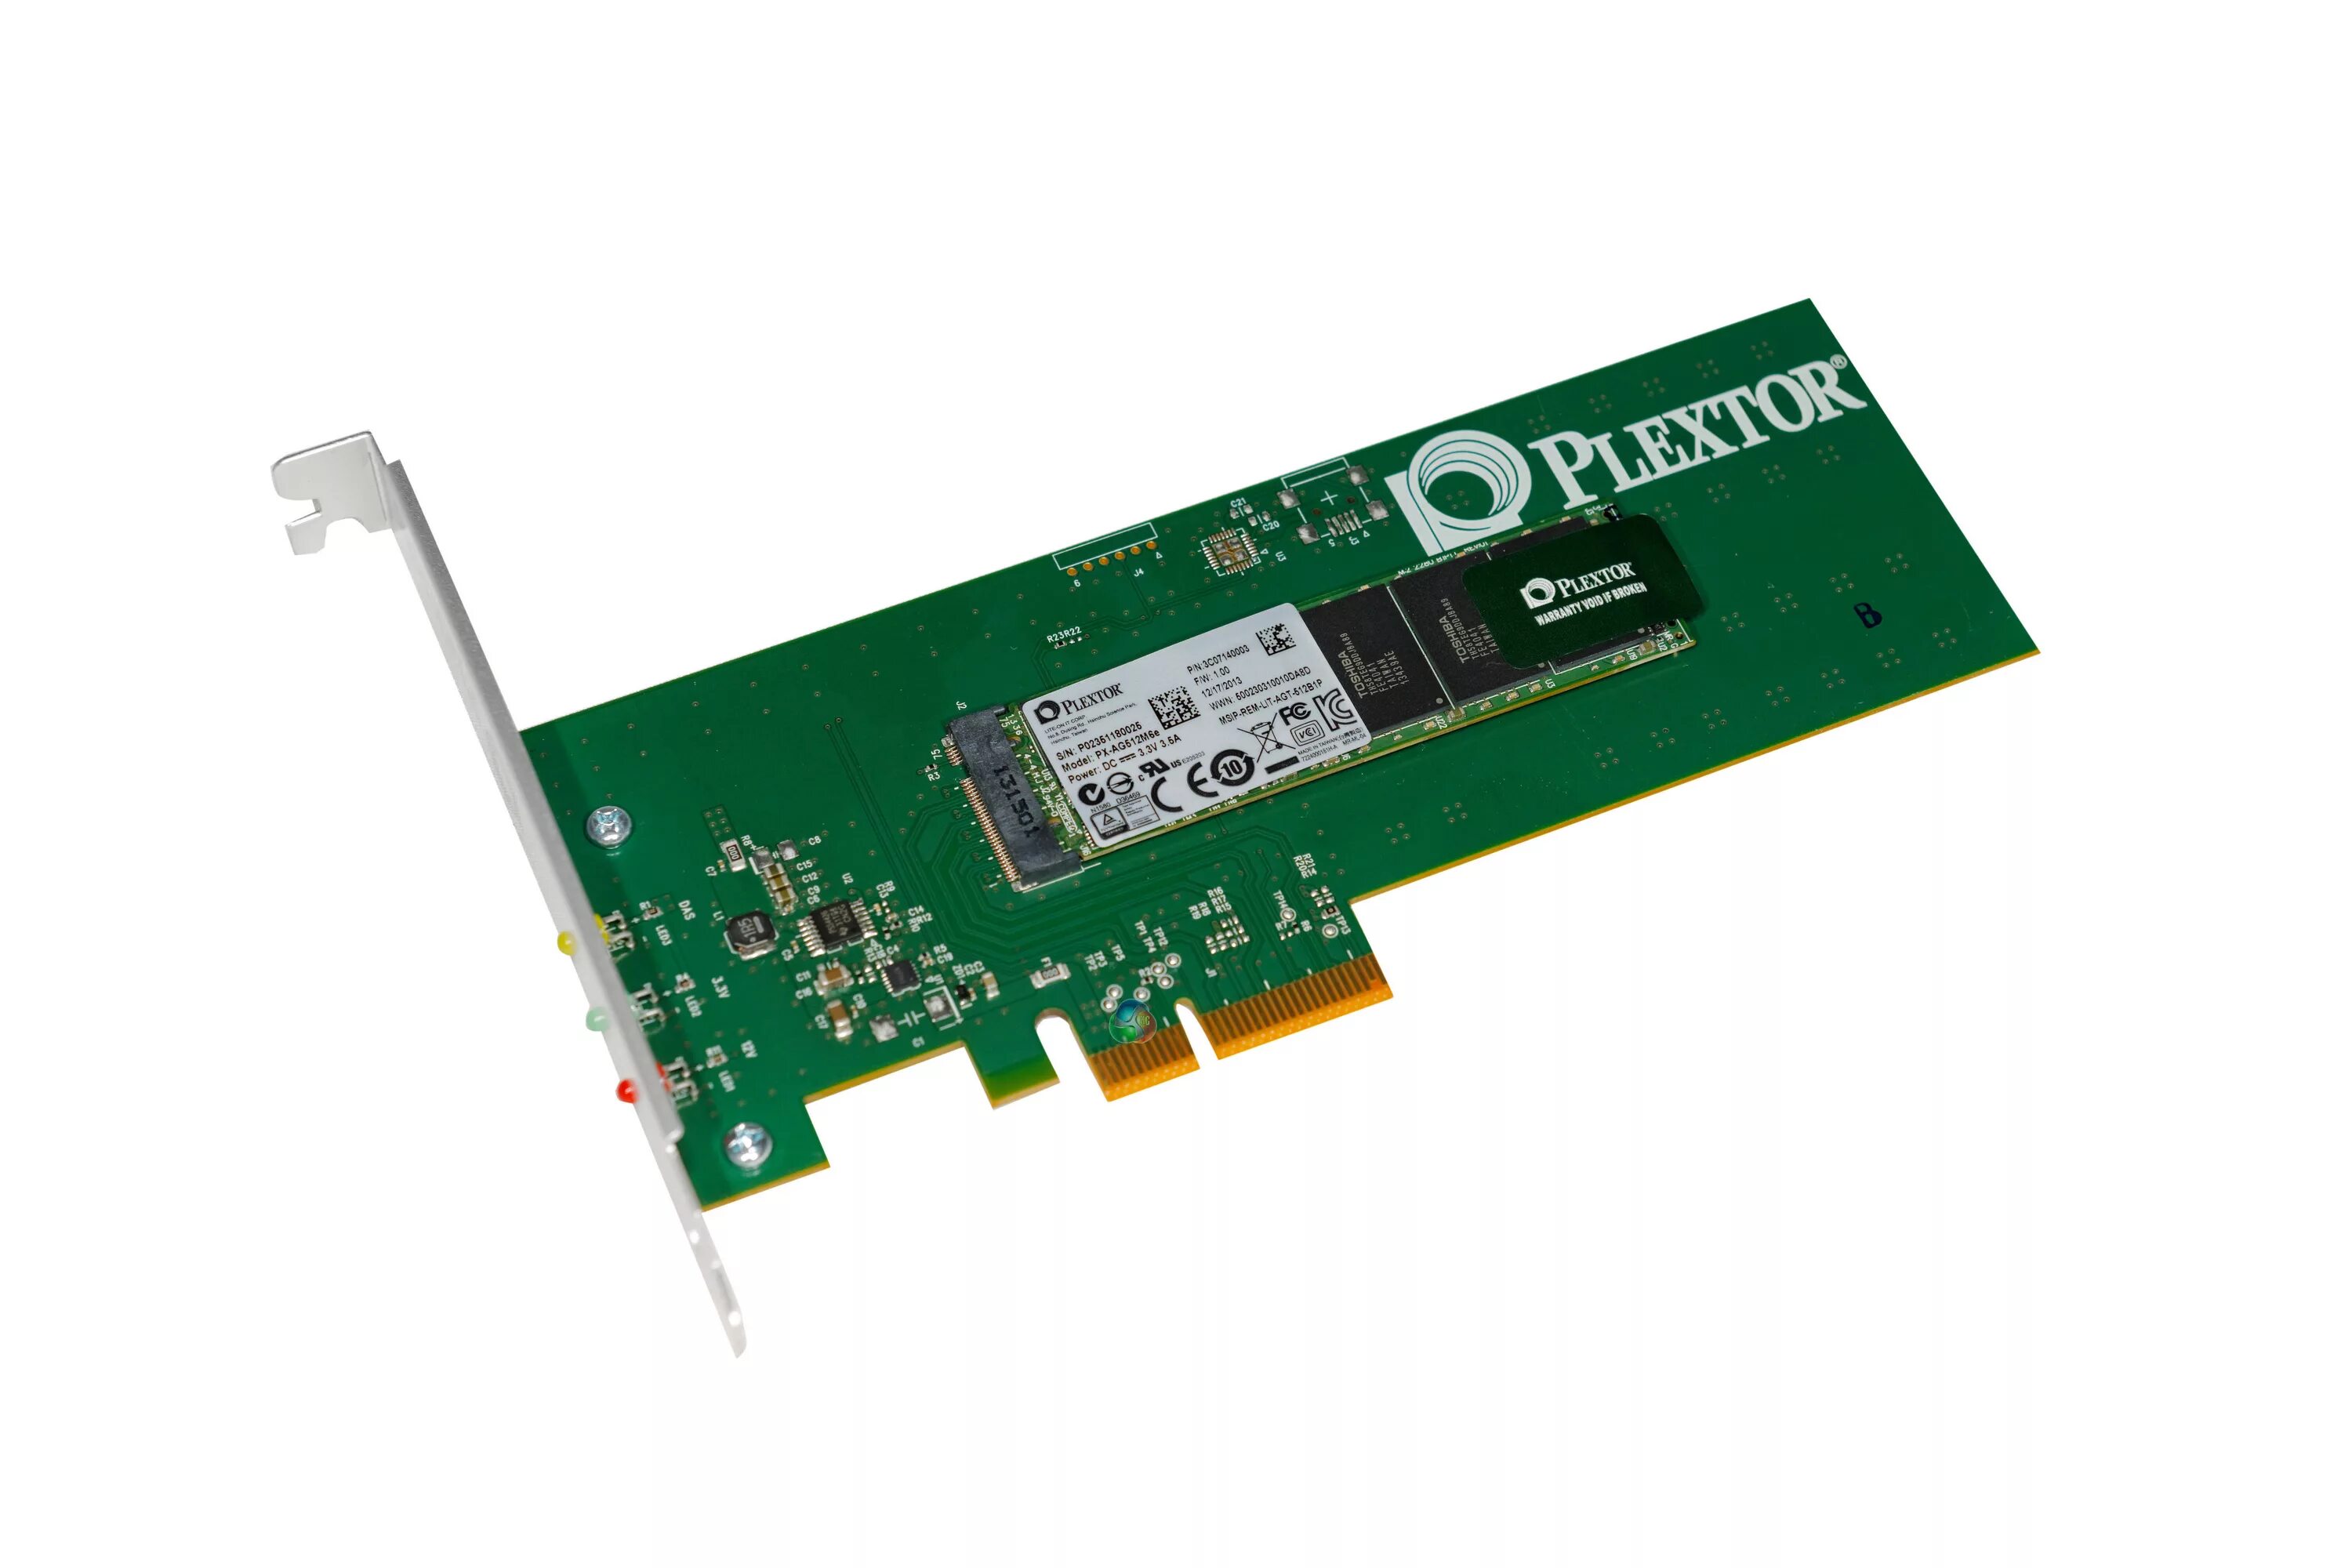 Pci e x1 ssd. PCI Express 2.0 x1 SSD. SSD накопитель PCI-E x1. Plextor PCI Express SSD. 512gb PCI-E NVME.